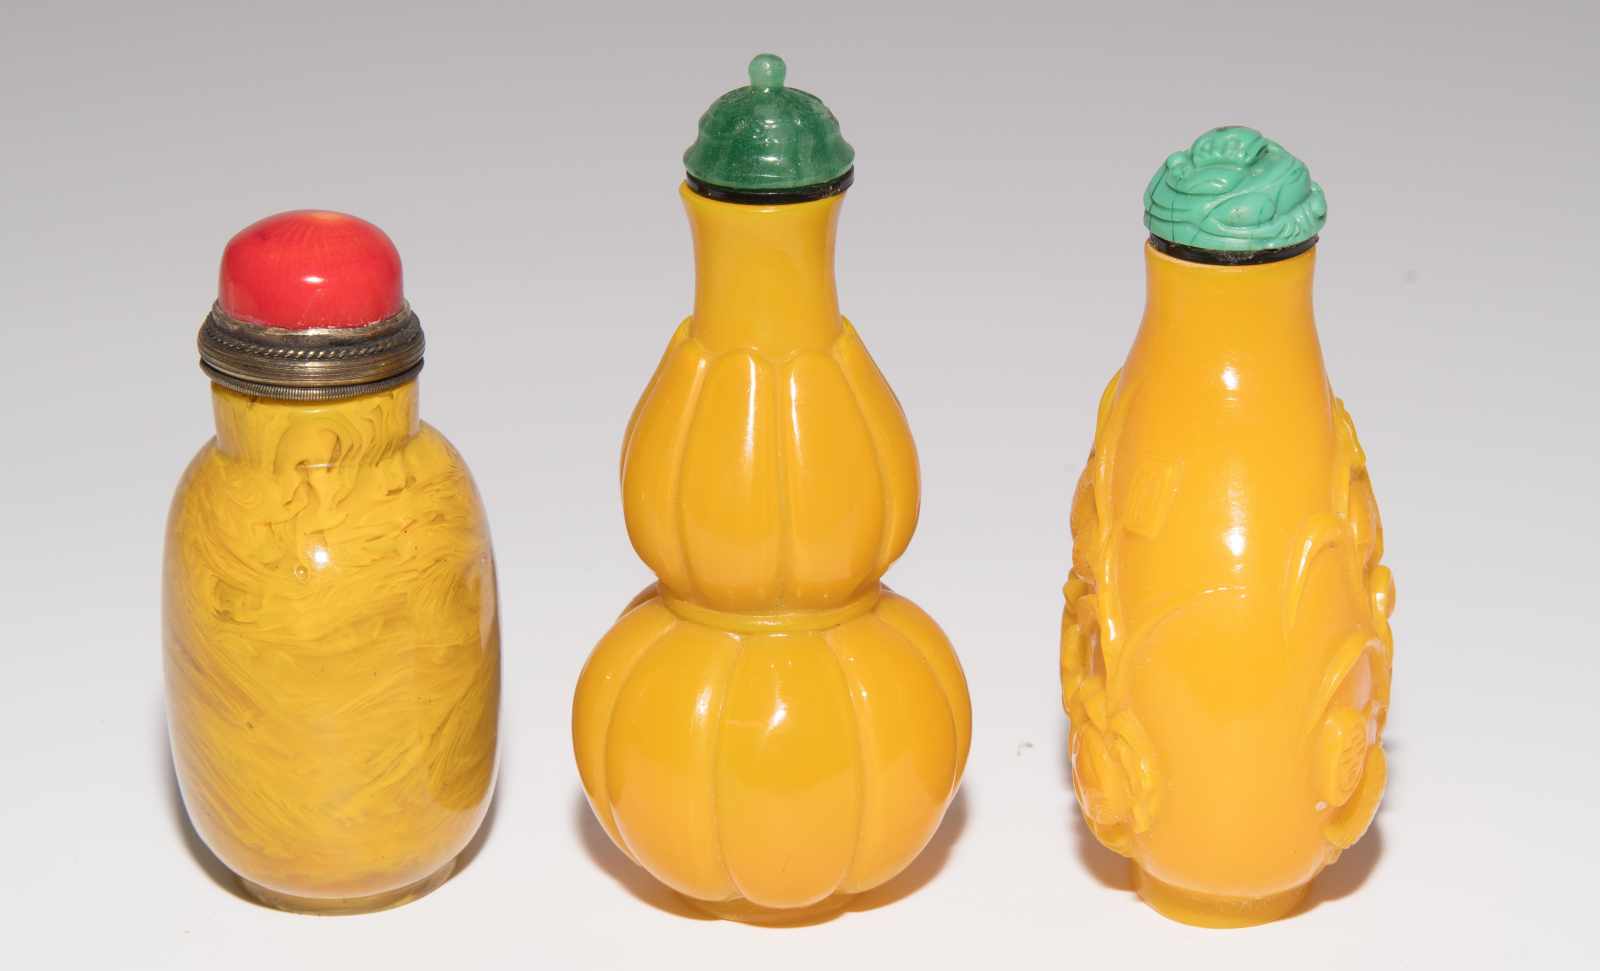 7 Glas Snuff BottlesChina. Halbtransparentes bis opakes Glas in verschiedenen Gelbtönen. H 5–8 cm. - Image 16 of 21